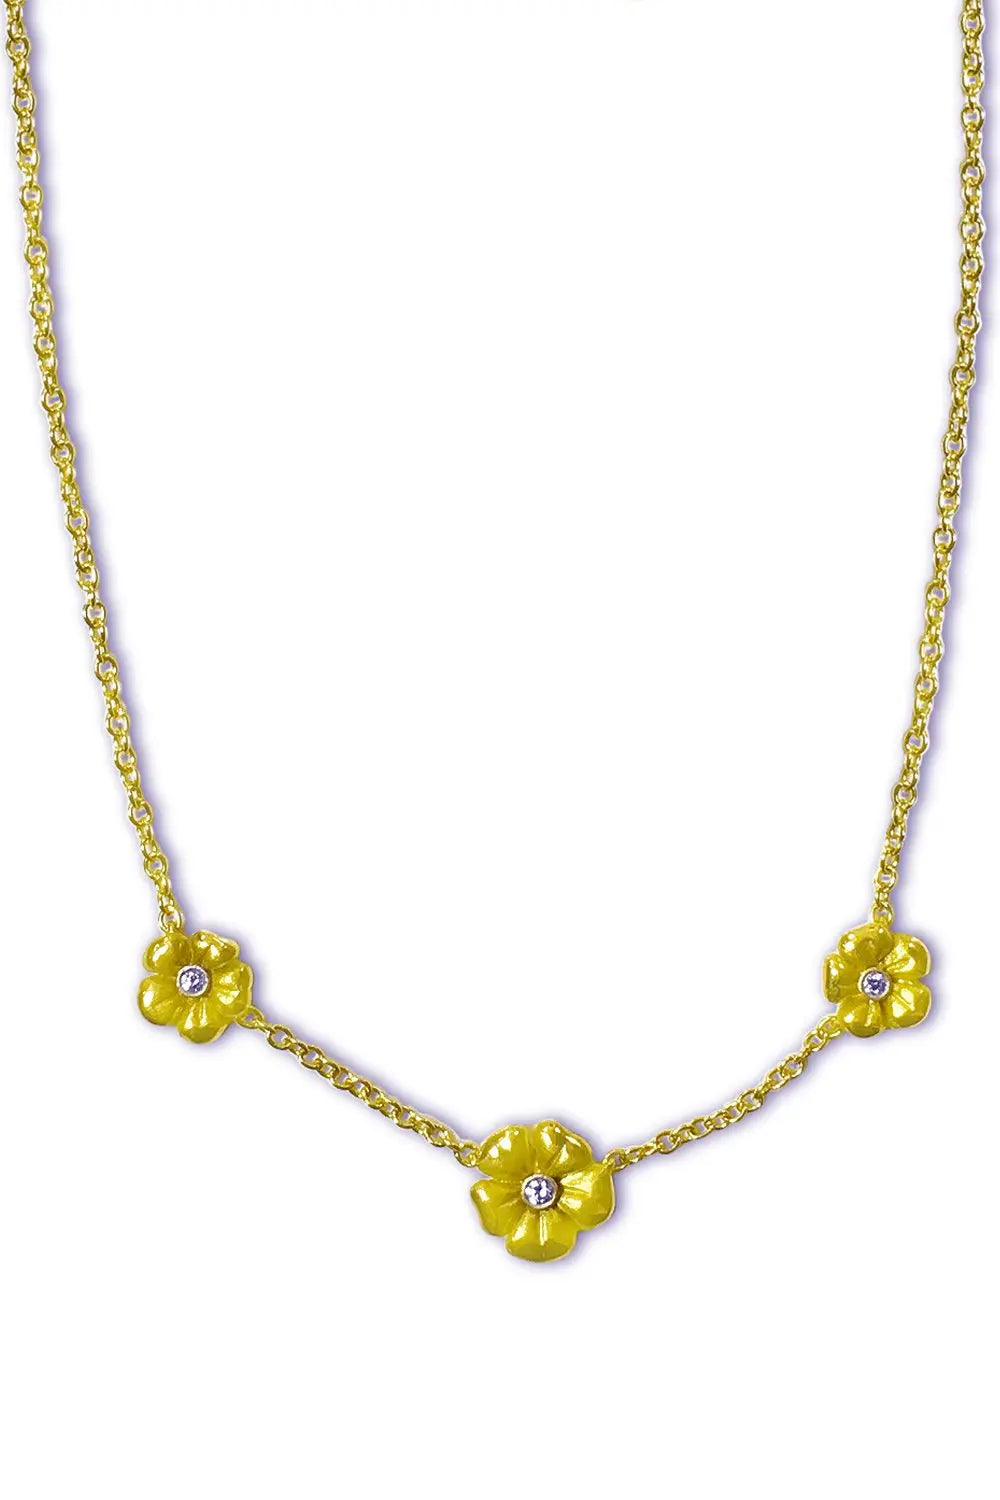 3 Blossom Flower Necklace - Squash Blossom Vail